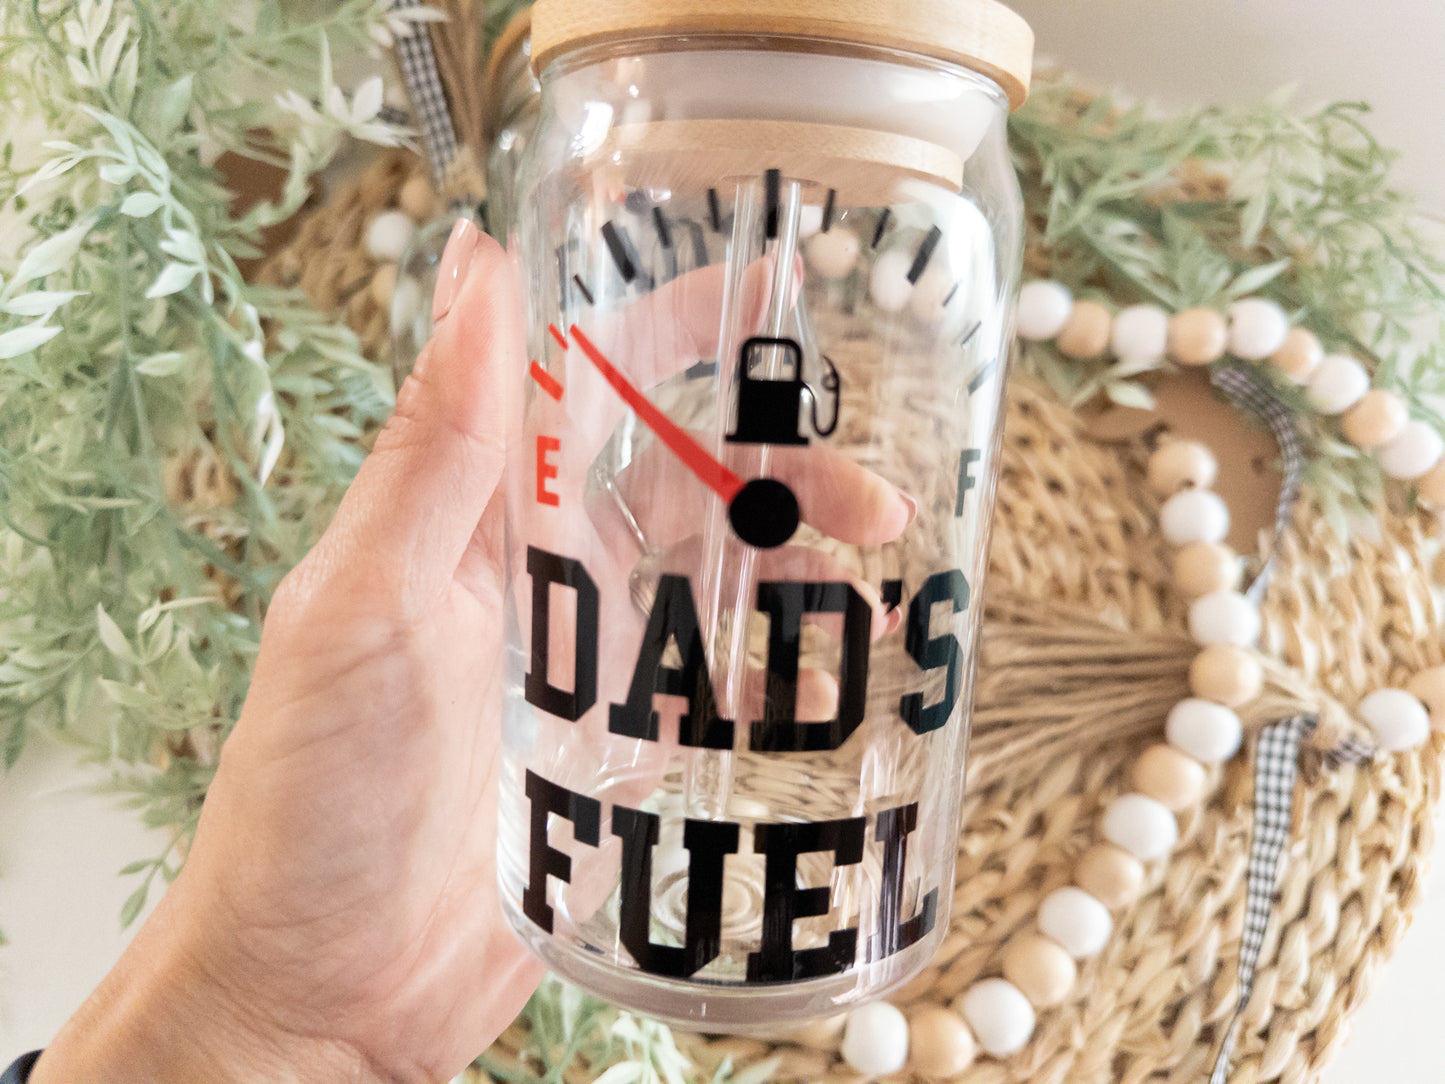 Dad's Fuel Glass Can| Mason Jar